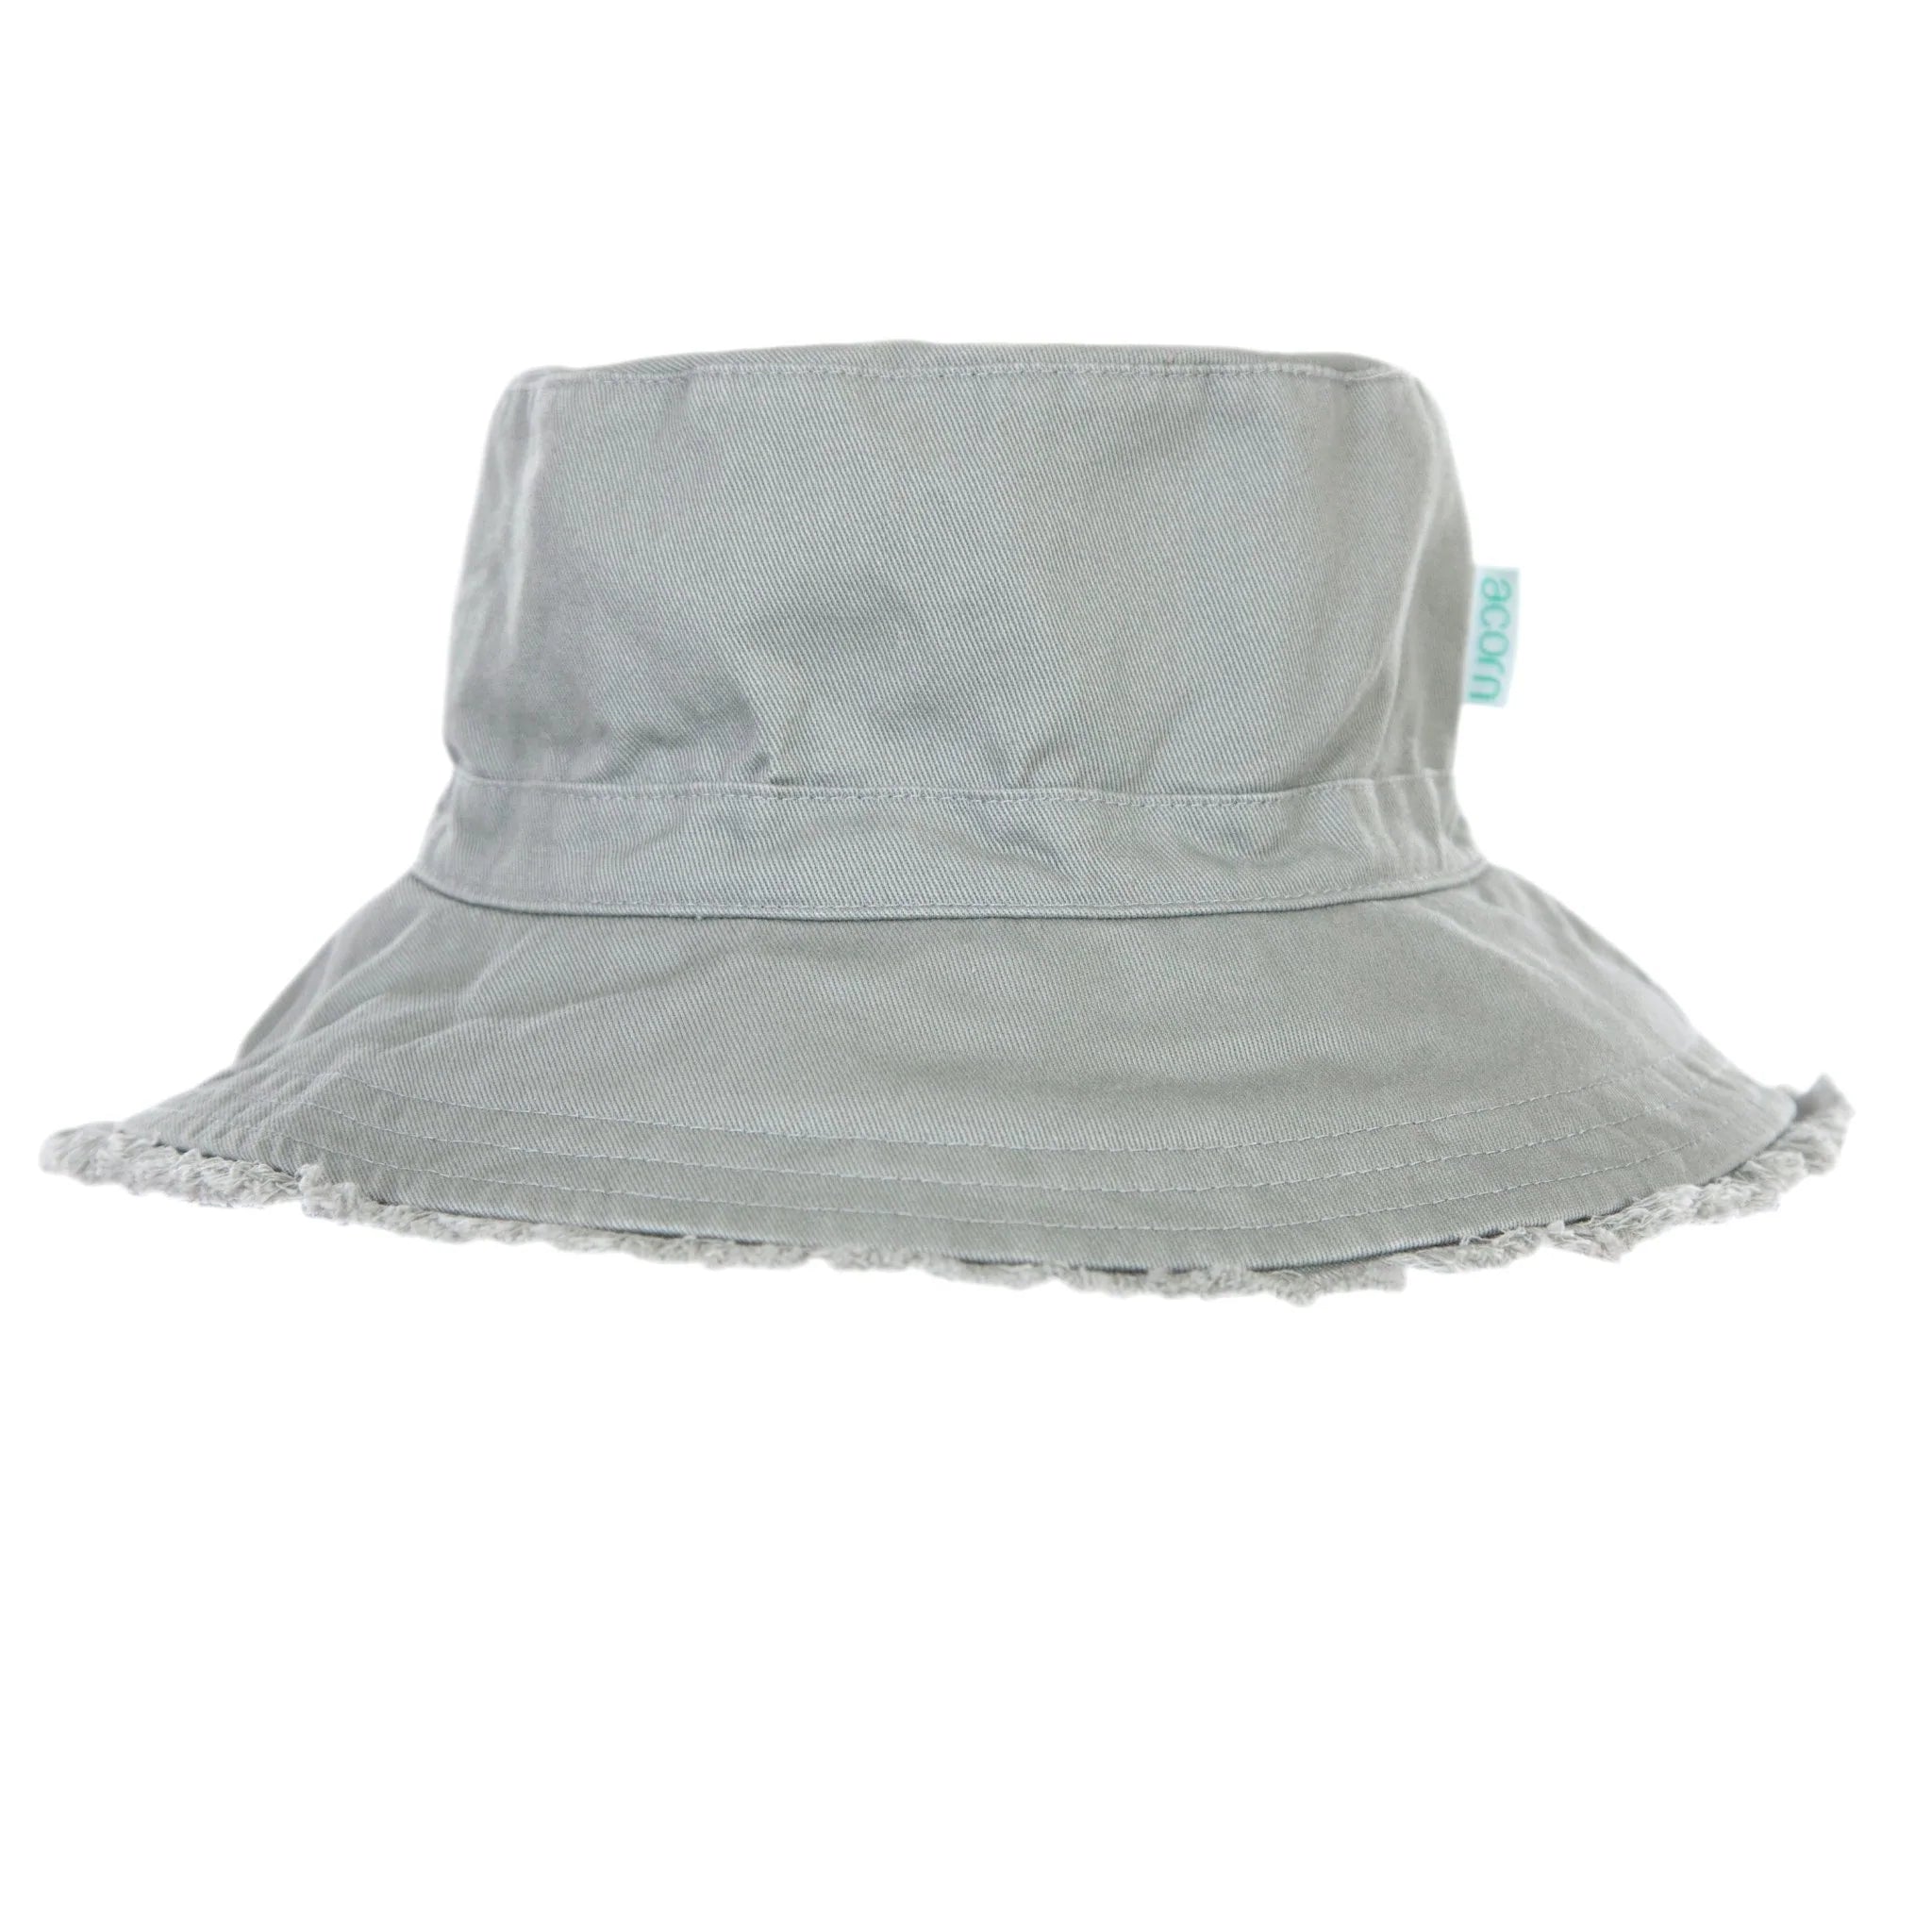 Acorn Kids Sunhats - Khaki Frayed Bucket Hat